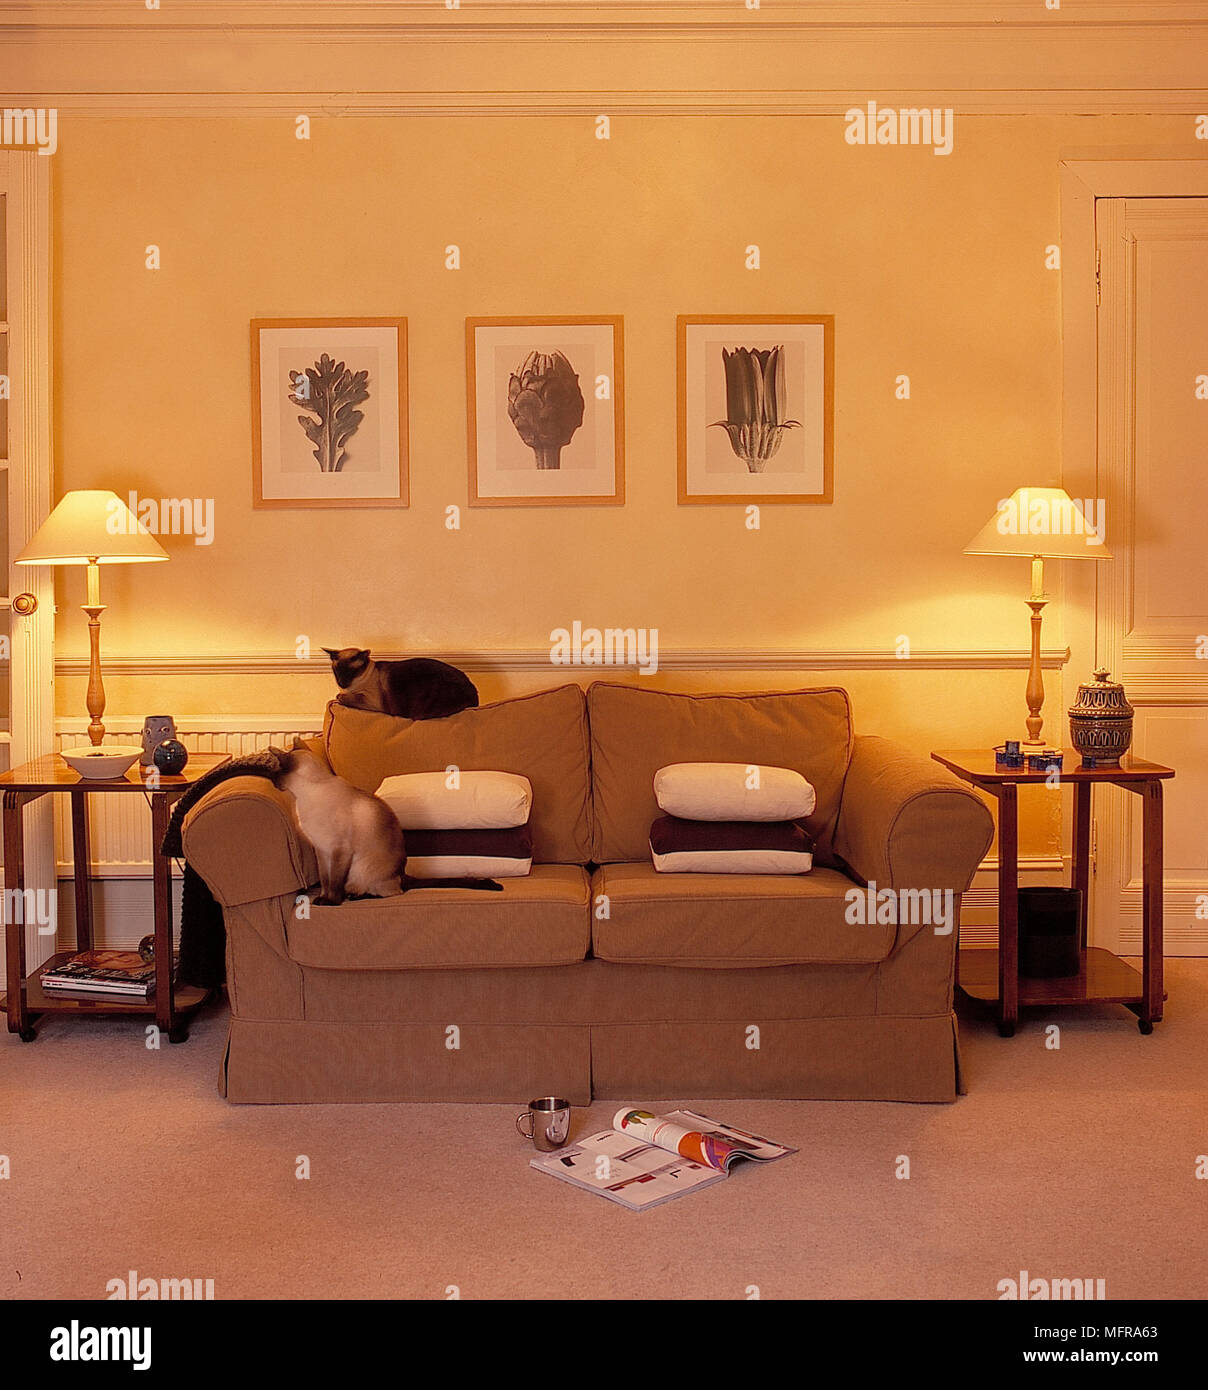 Wohnzimmer blassgelben Wänden bequemes Sofa paar Leuchten Lampen mit  Schattierungen Platz 2 Tier Beistelltische Ornamente Kissen drei gerahmte  Bilder Si Stockfotografie - Alamy